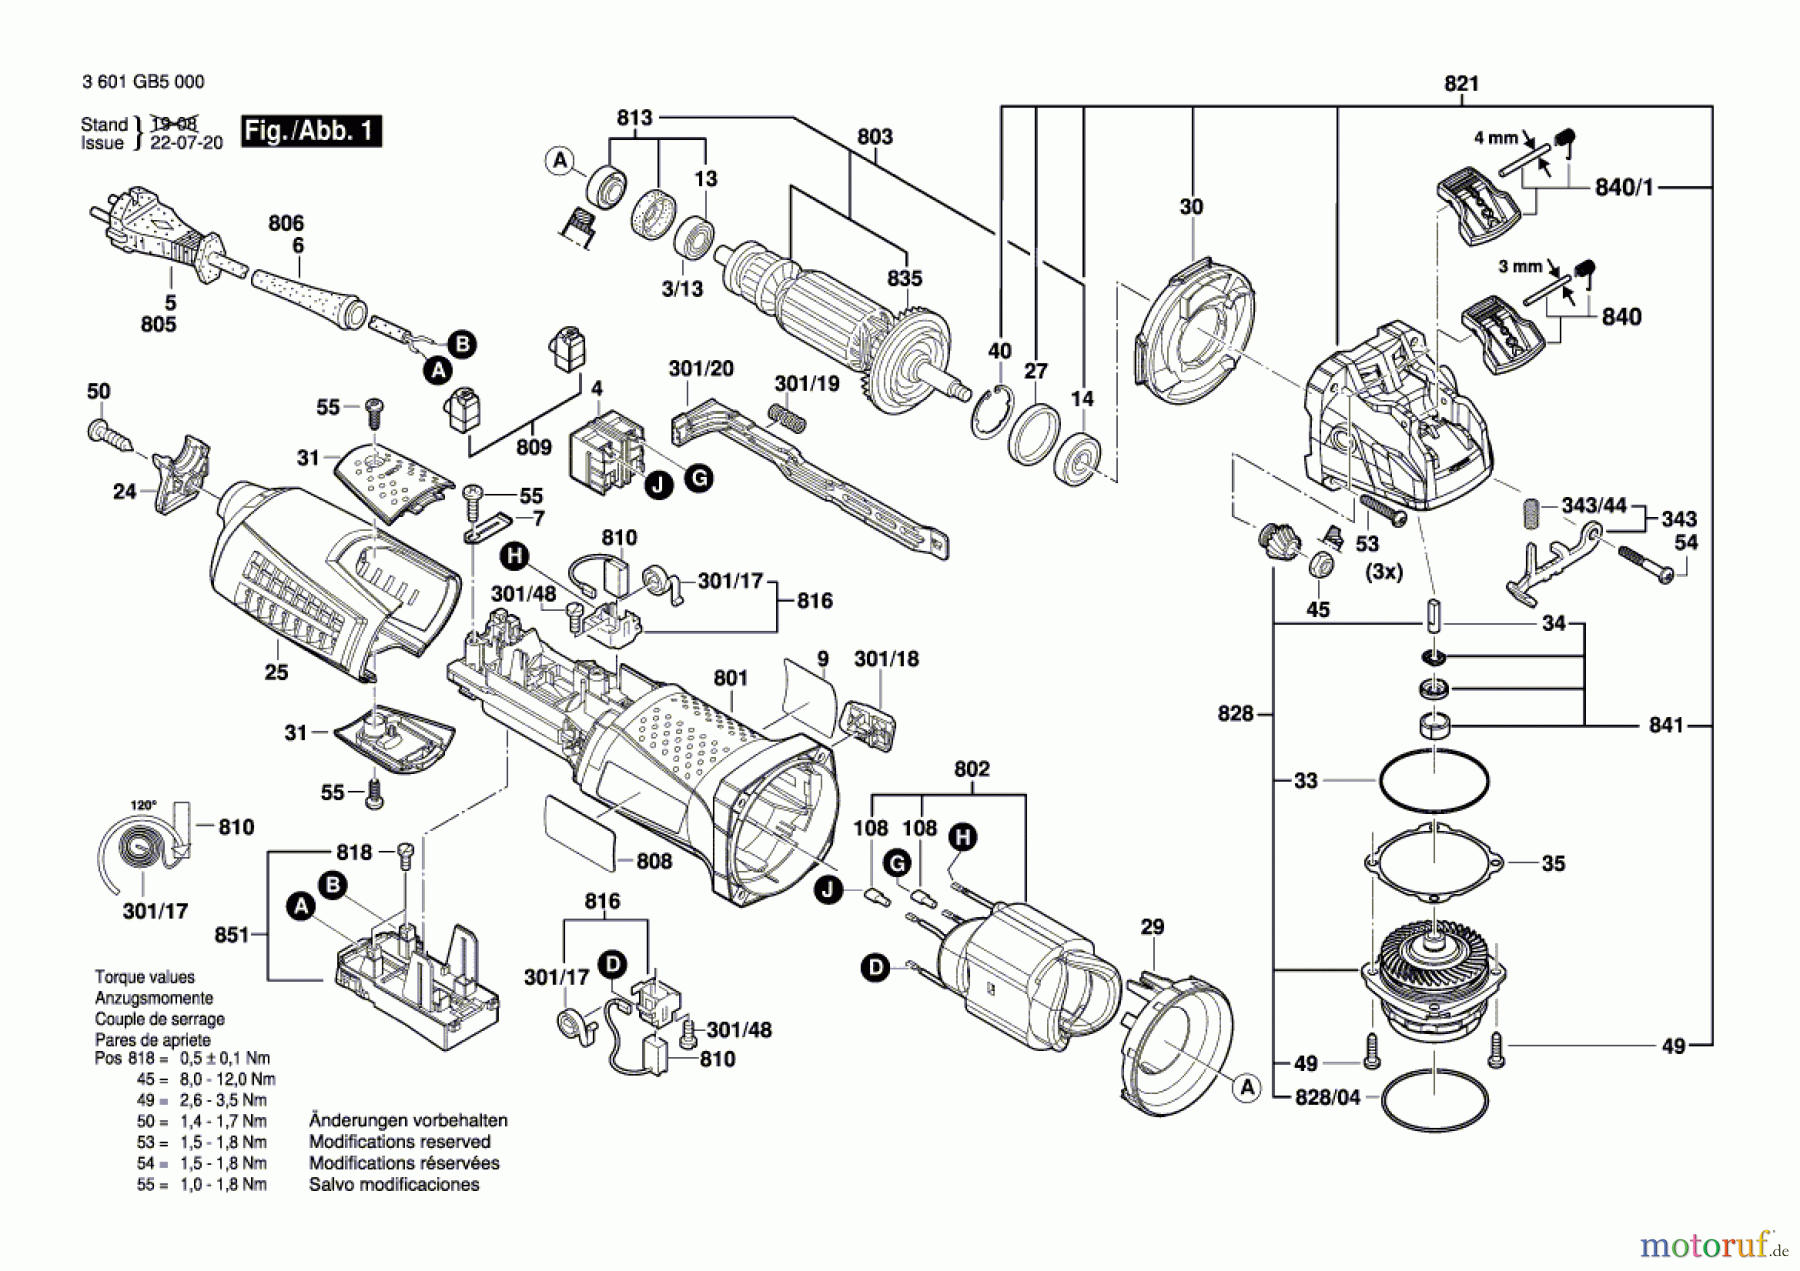  Bosch Werkzeug Winkelschleifer GWX 13-125 Seite 1